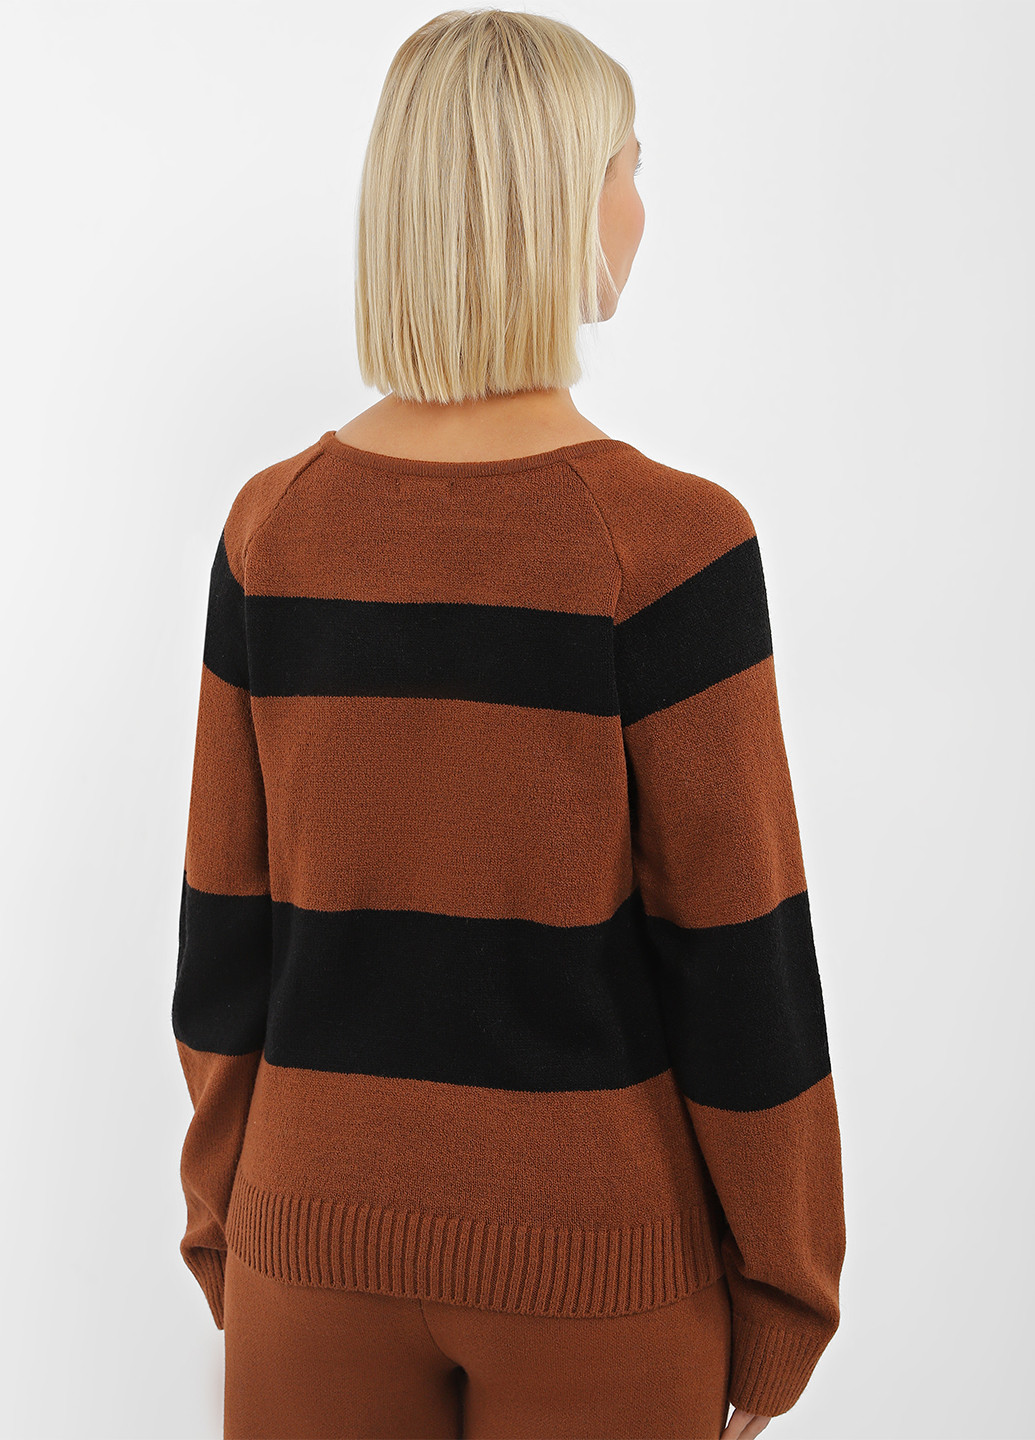 Коричневый демисезонный пуловер пуловер Sewel